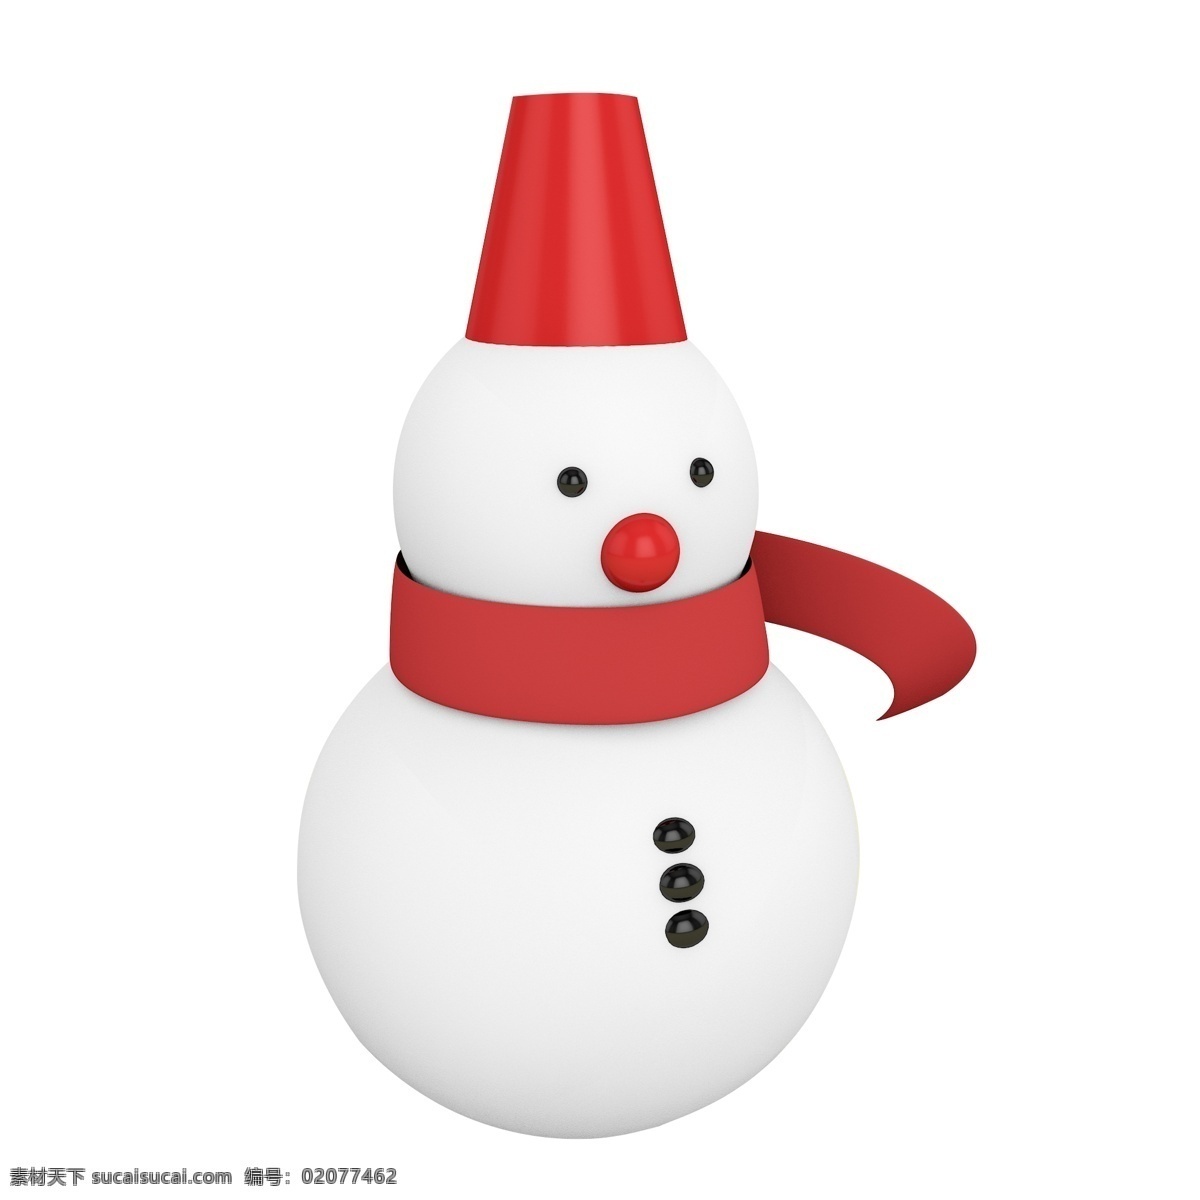 c4d3d 圣诞 雪人 三维 立体 冬天 呆萌 可爱 红鼻子 红围巾 红帽子 可编辑 模型 原创 源文件 创意